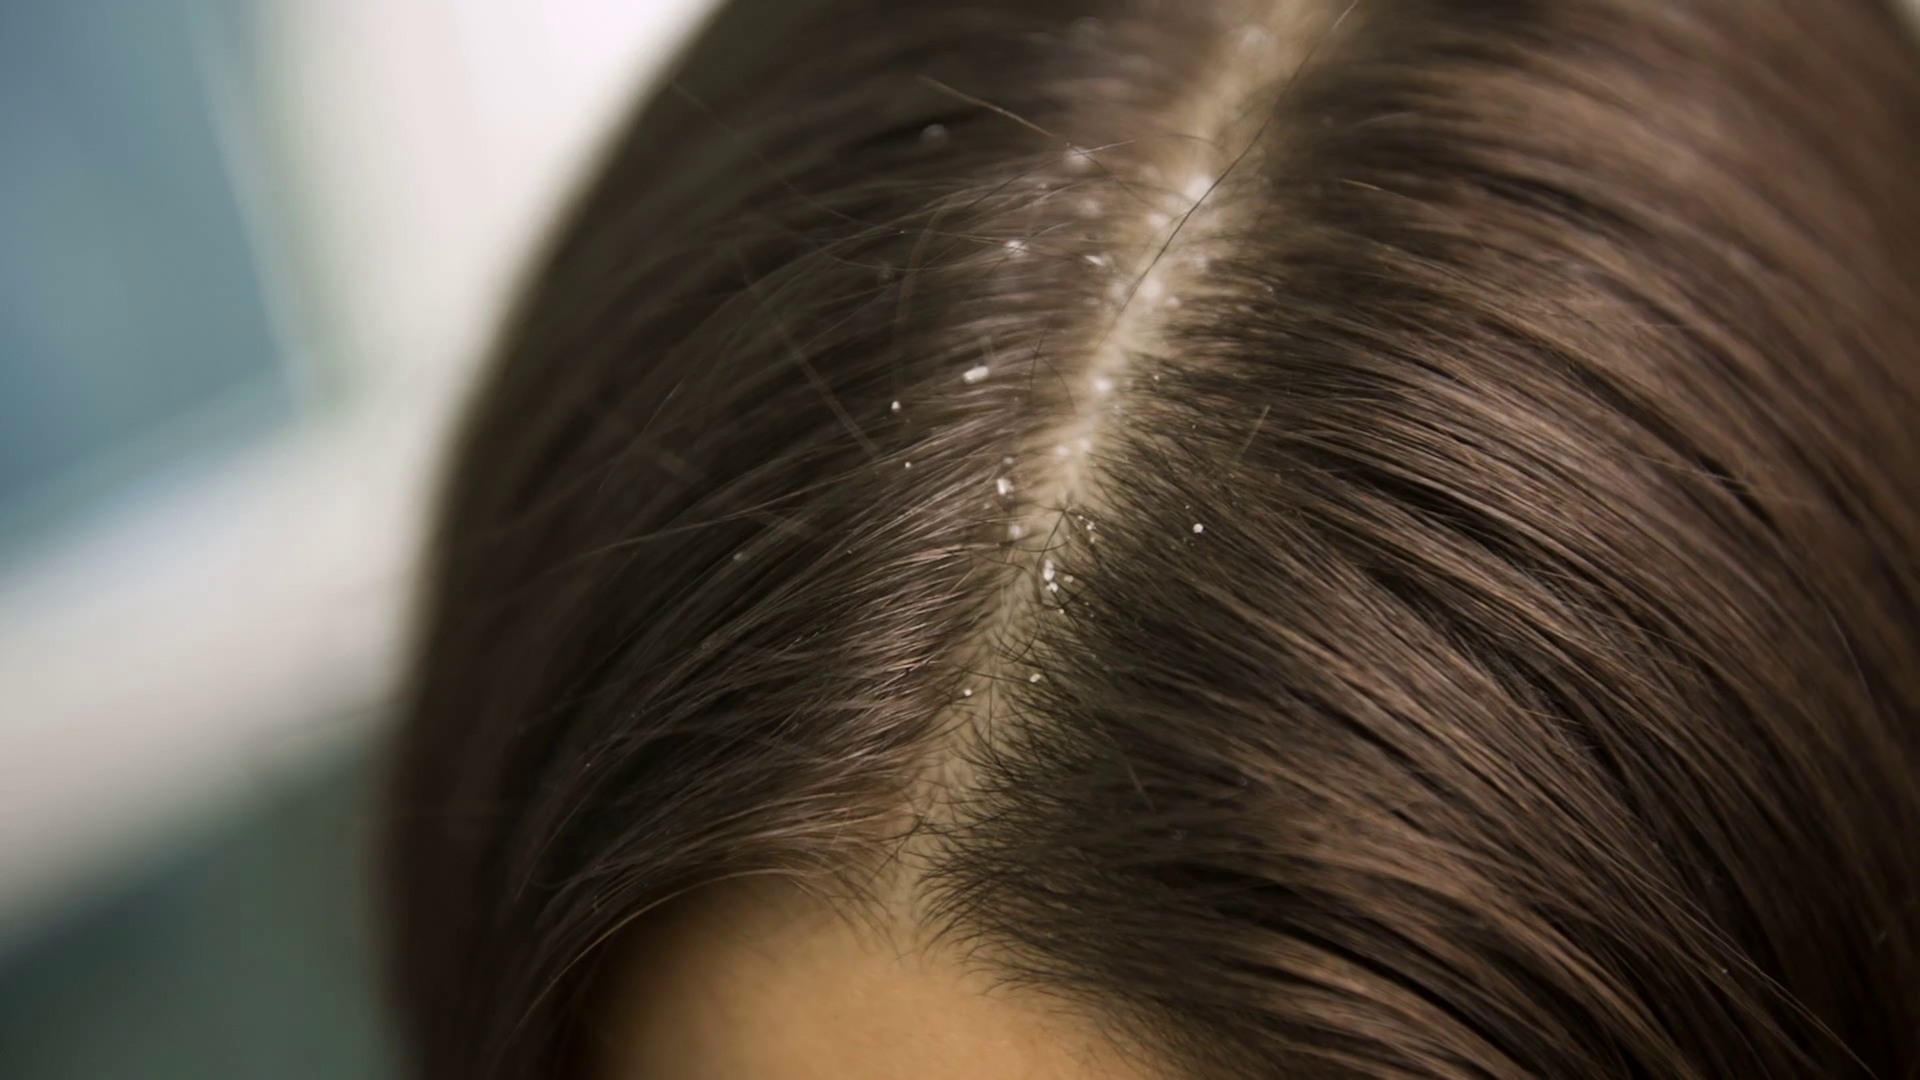 Άσπρες νιφάδες στα μαλλιά: Πότε είναι πιτυρίδα και πότε ξηροδερμία; – Ιδού η απάντηση